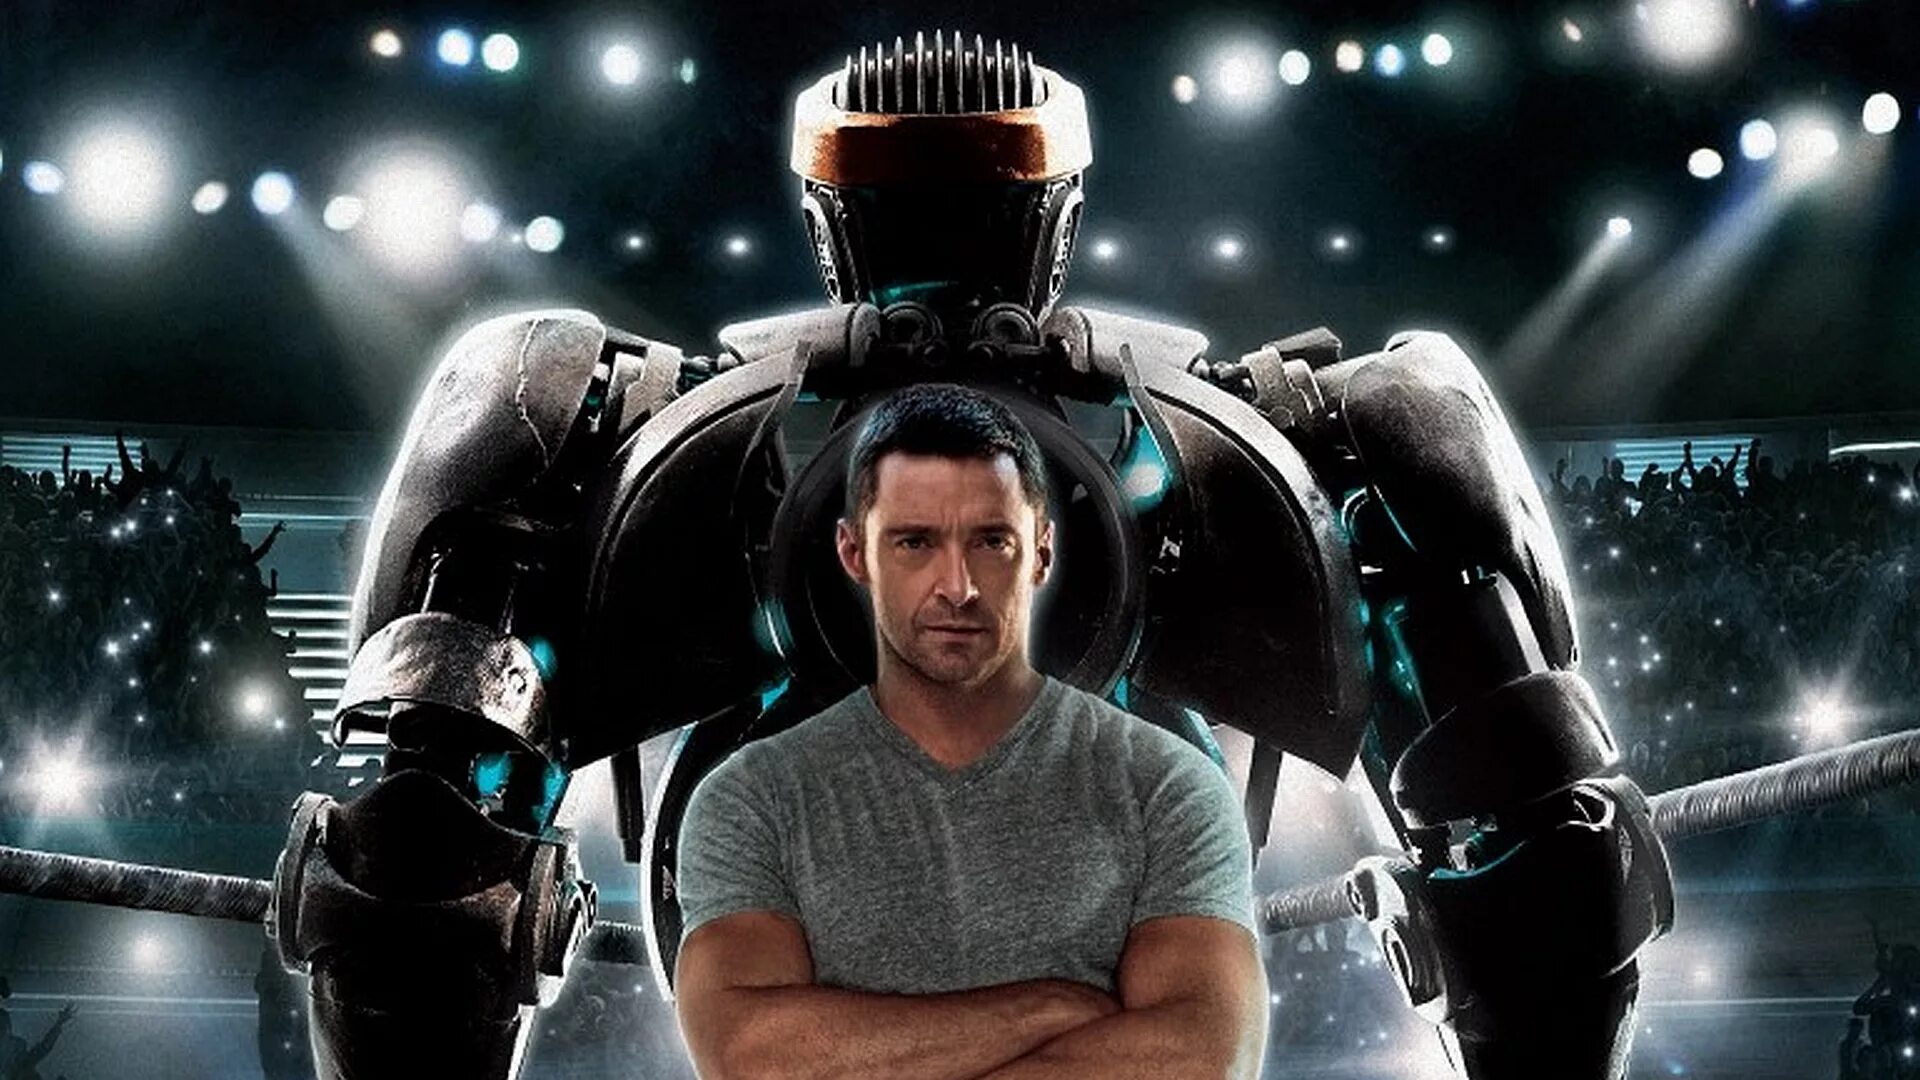 Хью Джекман Живая сталь 2. Хью Джекман Живая сталь. Живая сталь (2011) (real Steel). Хью Джекман робот боксер.